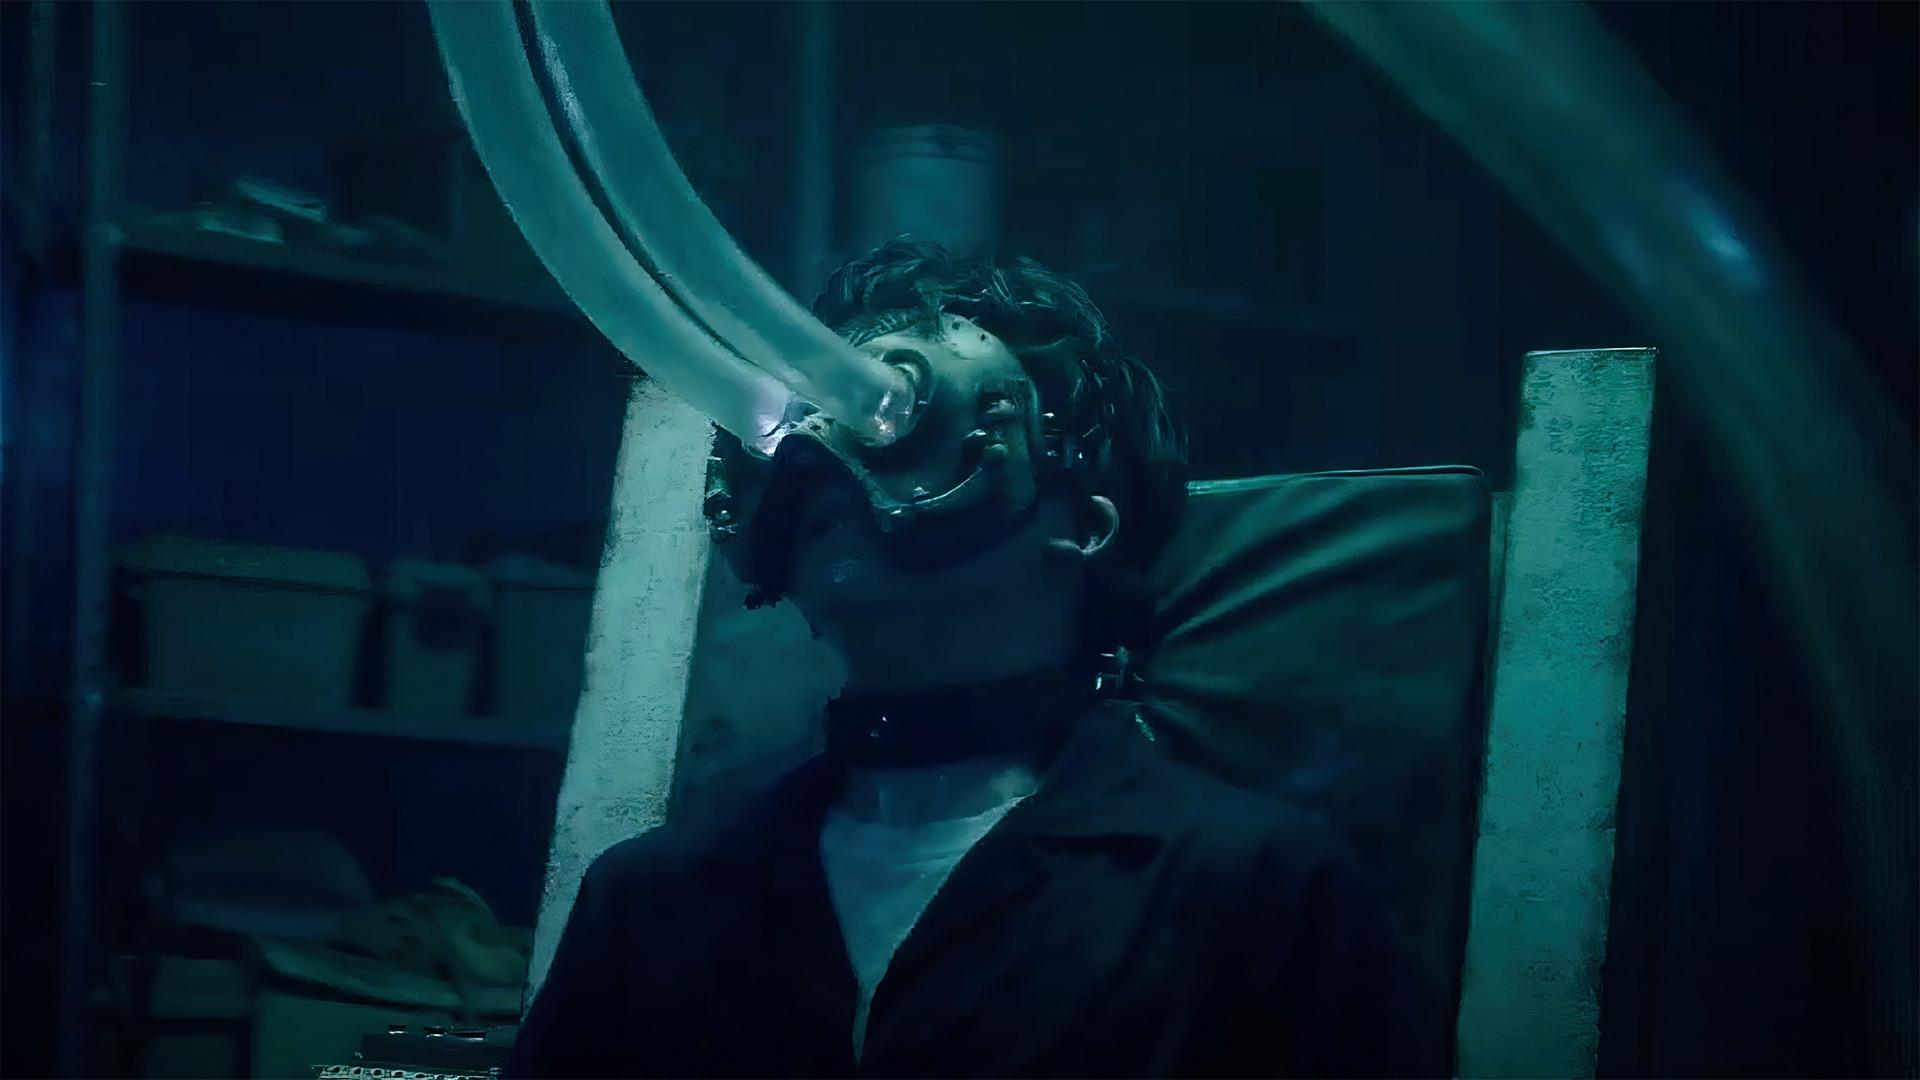 استفاده جیگساو از تله چشمی در نخستین کلیپ فیلم Saw X